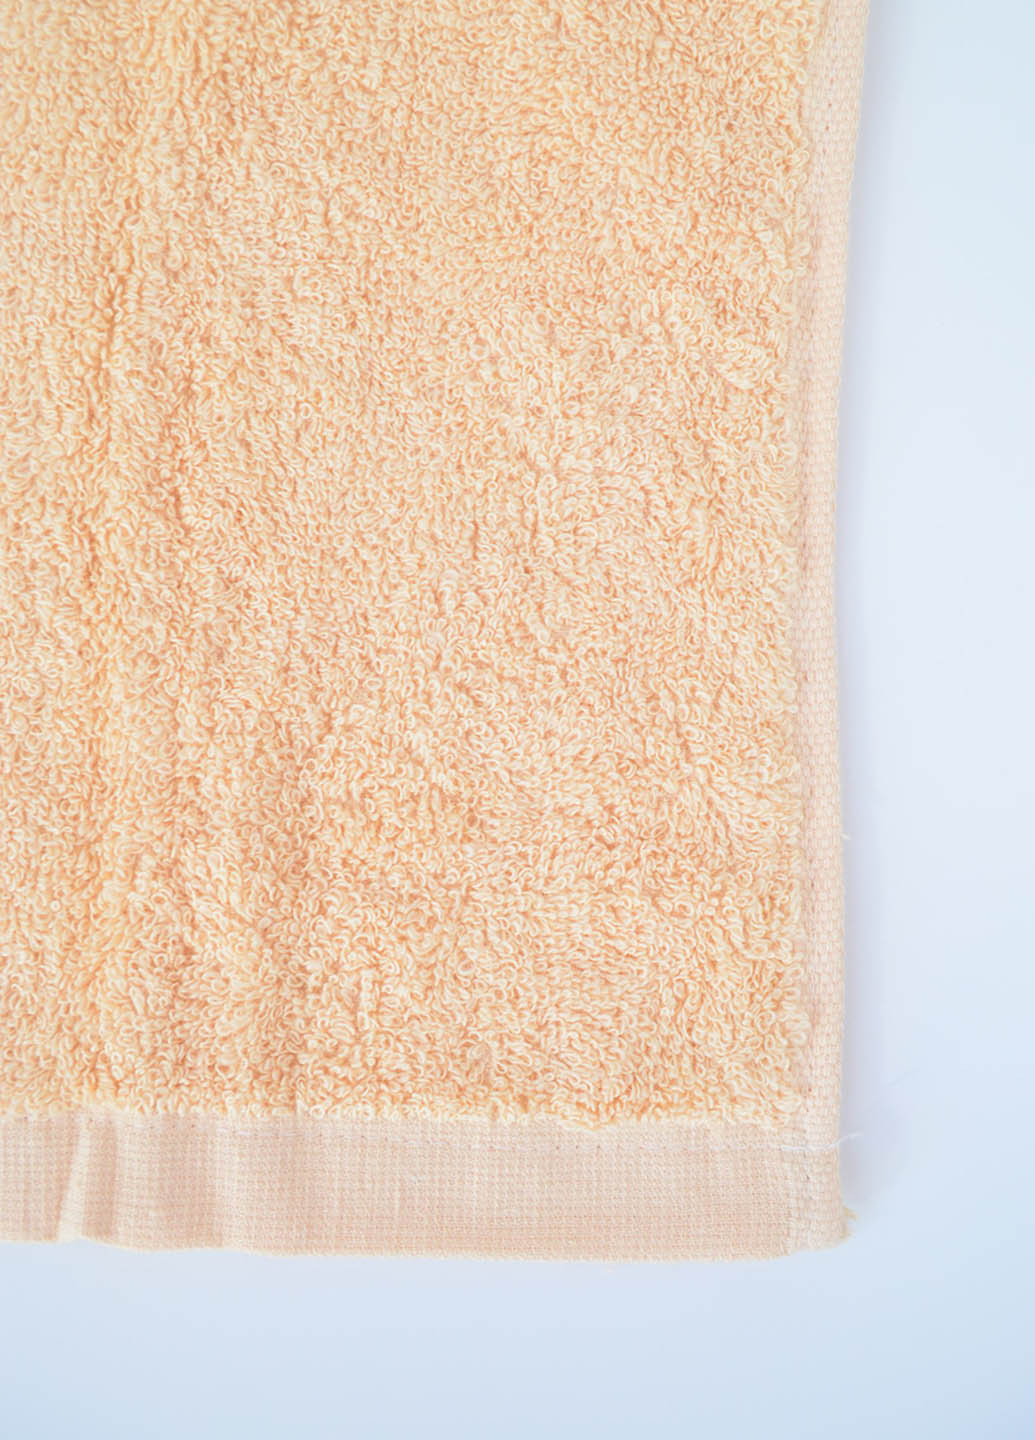 Homedec полотенце лицевое махровое 100х50 см однотонный светло-бежевый производство - Турция